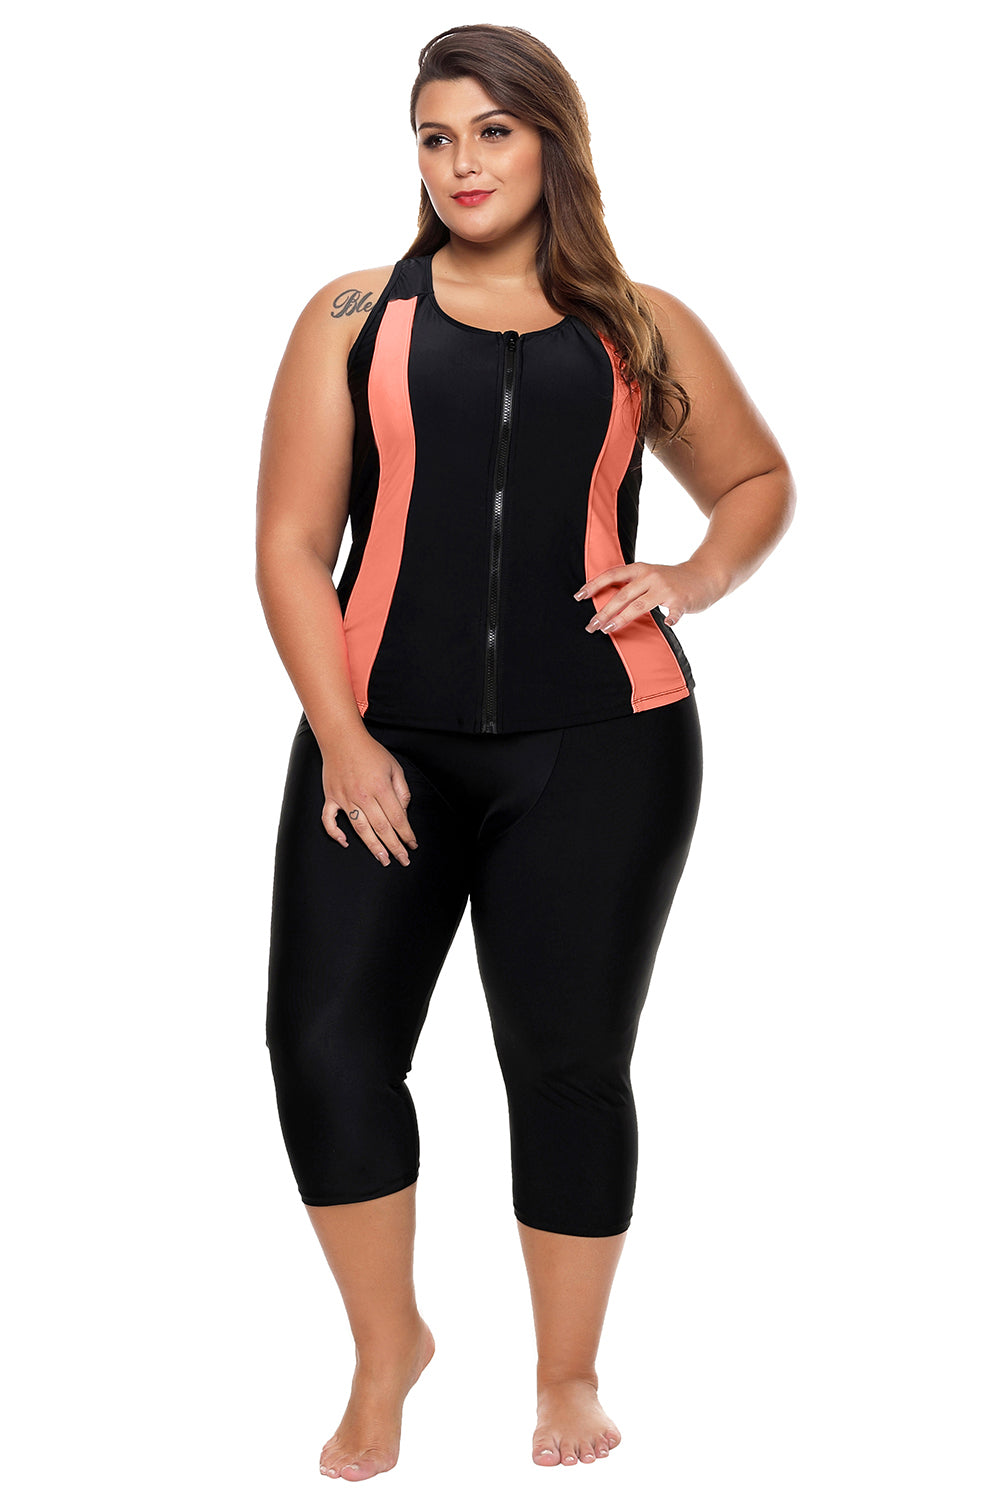 Combinaison de plongée femme zippée noire contrastée avec accent orange